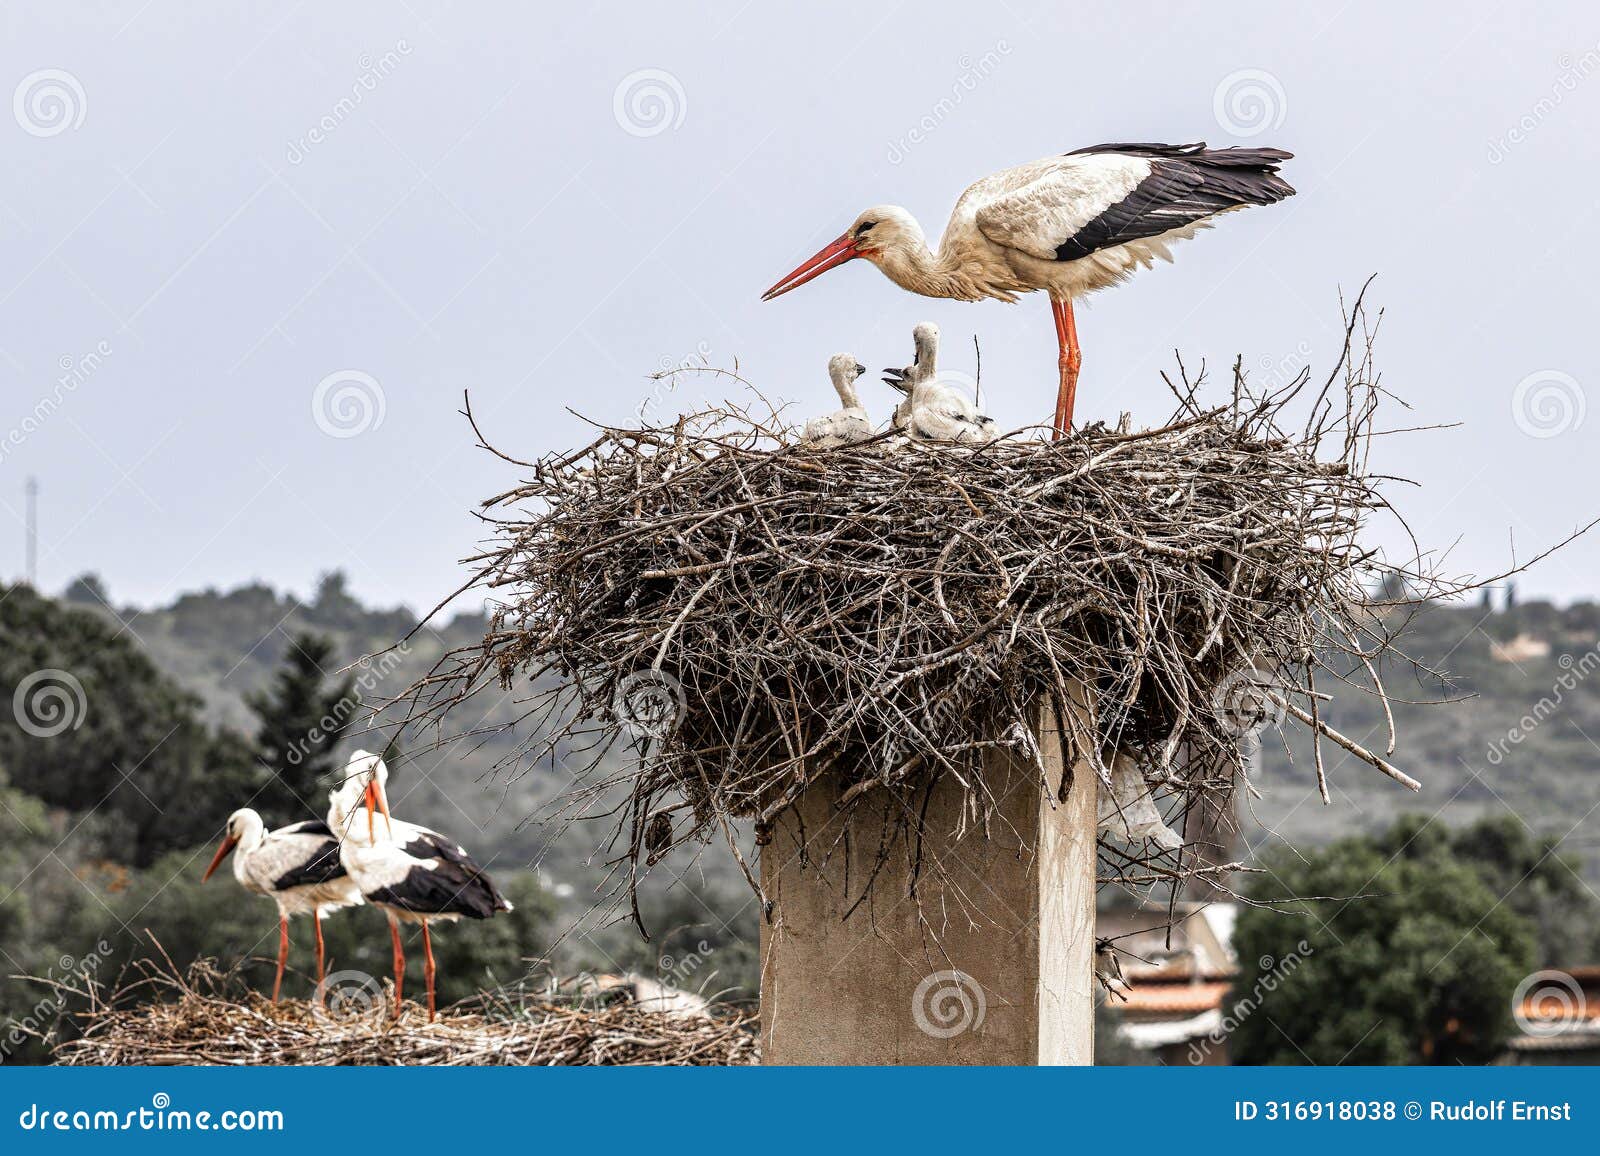 white storks, ciconia ciconia at odiaxere in the algarve region, district faro, portugal